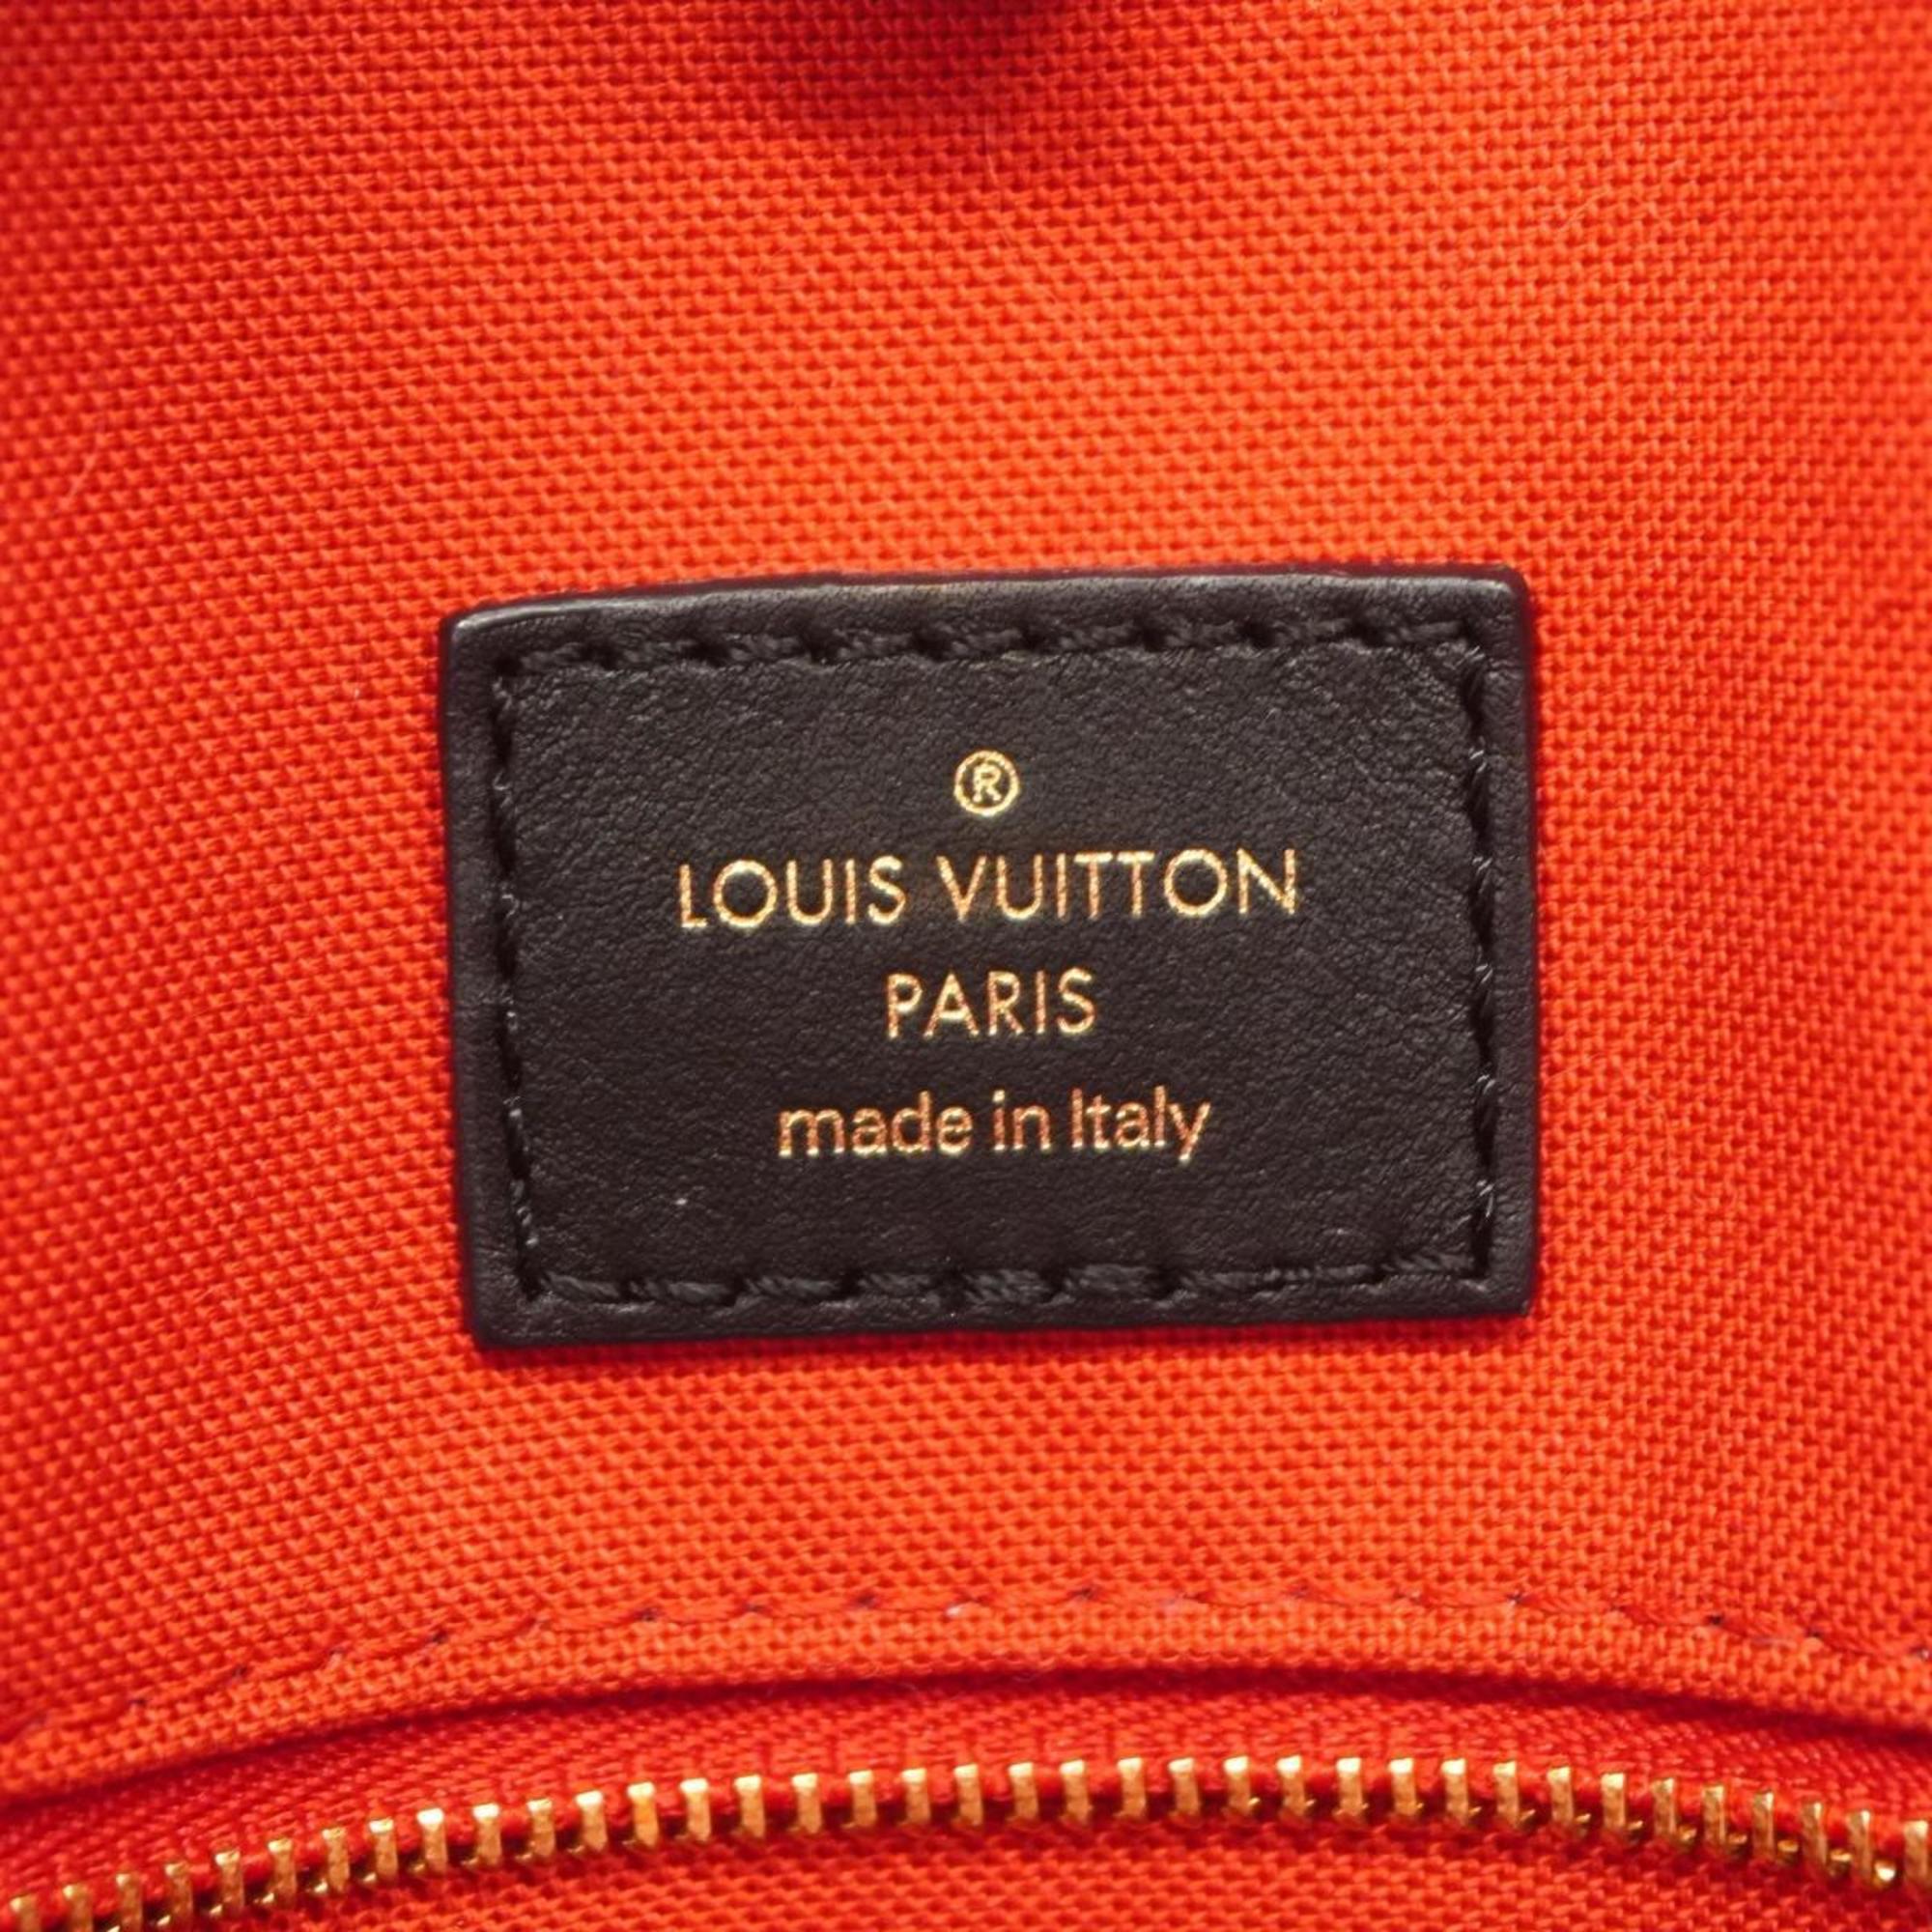 ルイ・ヴィトン(Louis Vuitton) ルイ・ヴィトン ハンドバッグ モノグラム・ジャイアント オンザゴーGM M44576 ブラウンレディース